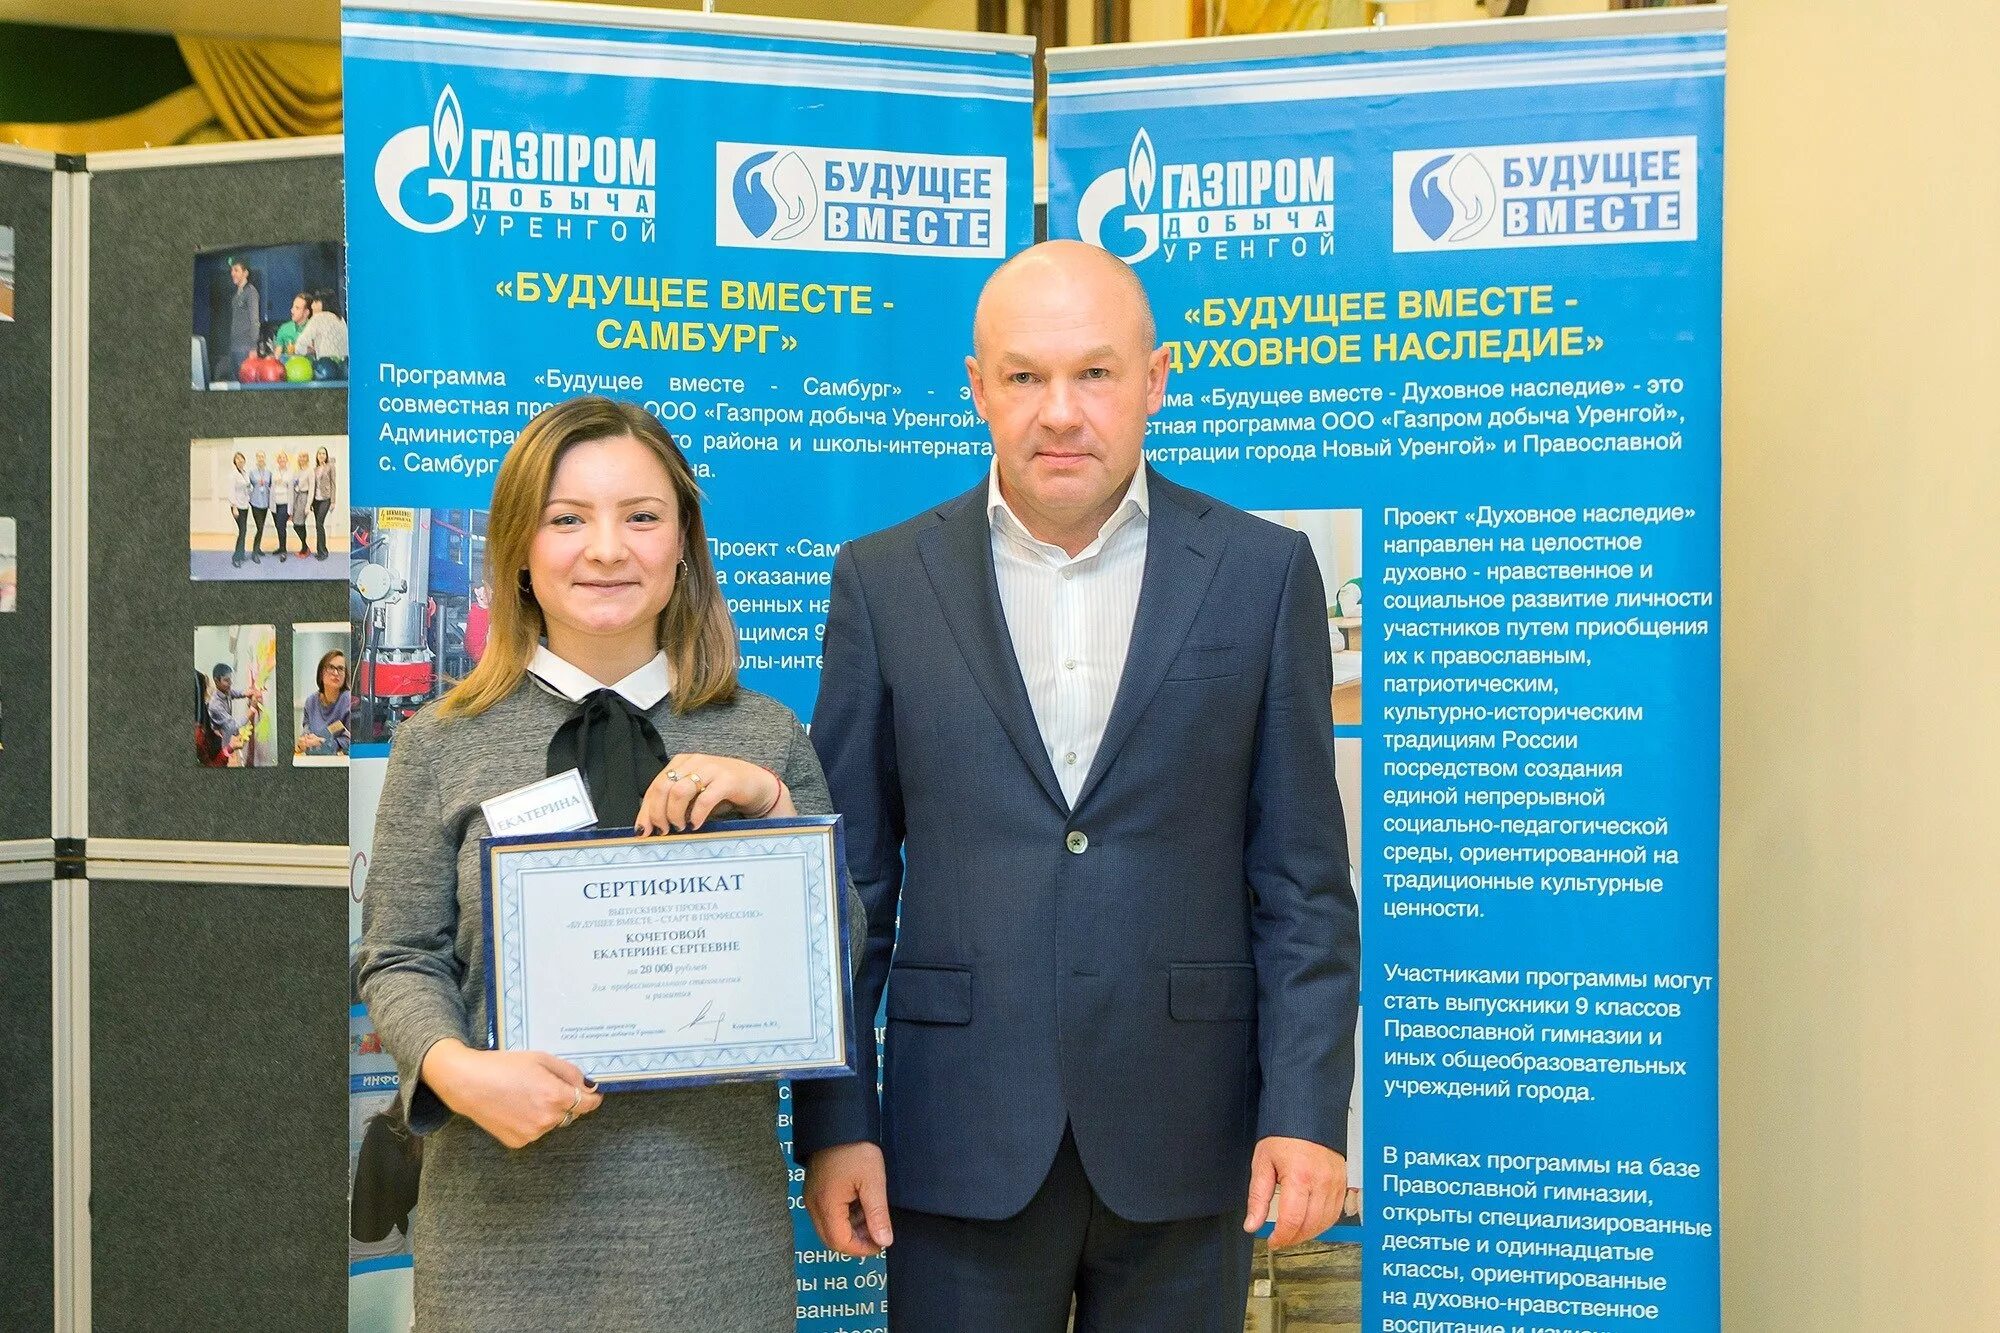 Ген директор Газпрома новый Уренгой. Телепрограмма новый уренгой все